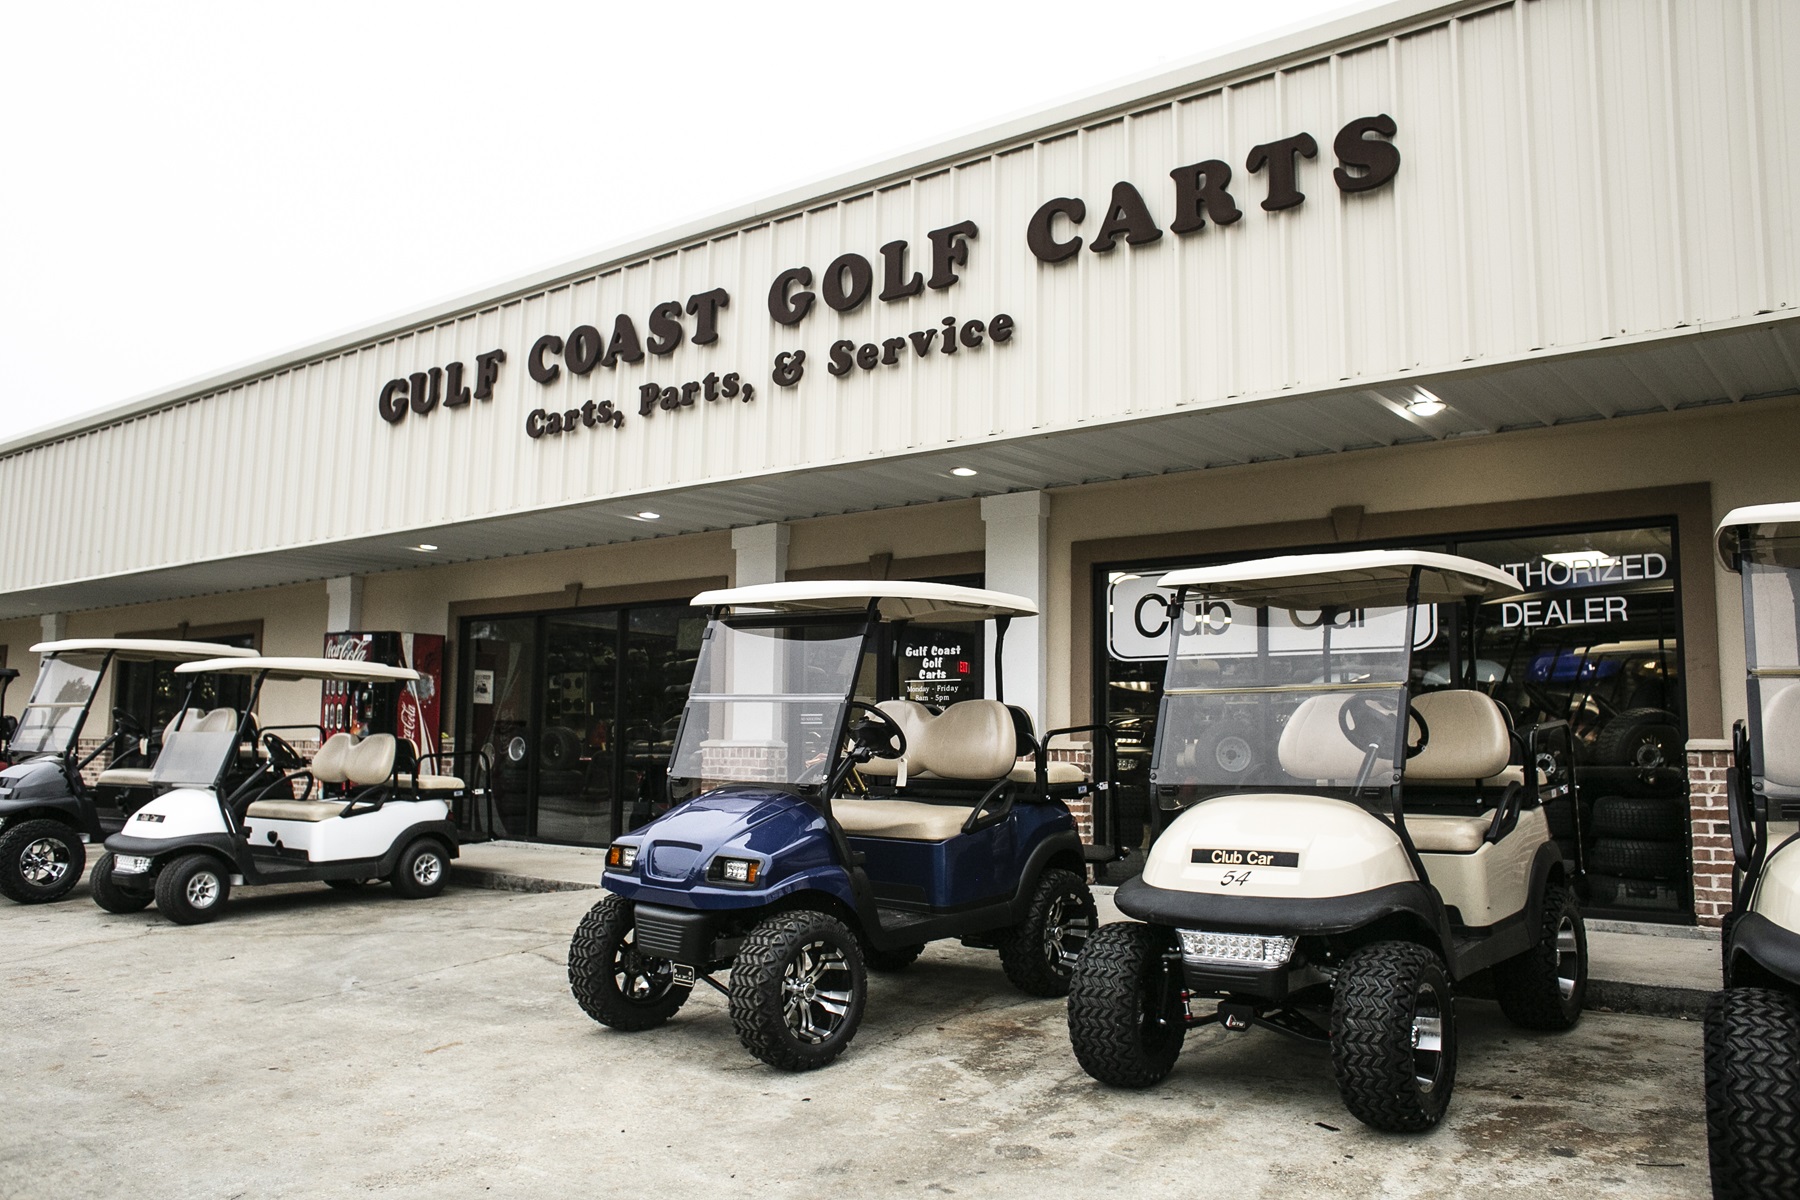 single seat golf cart manufacturers